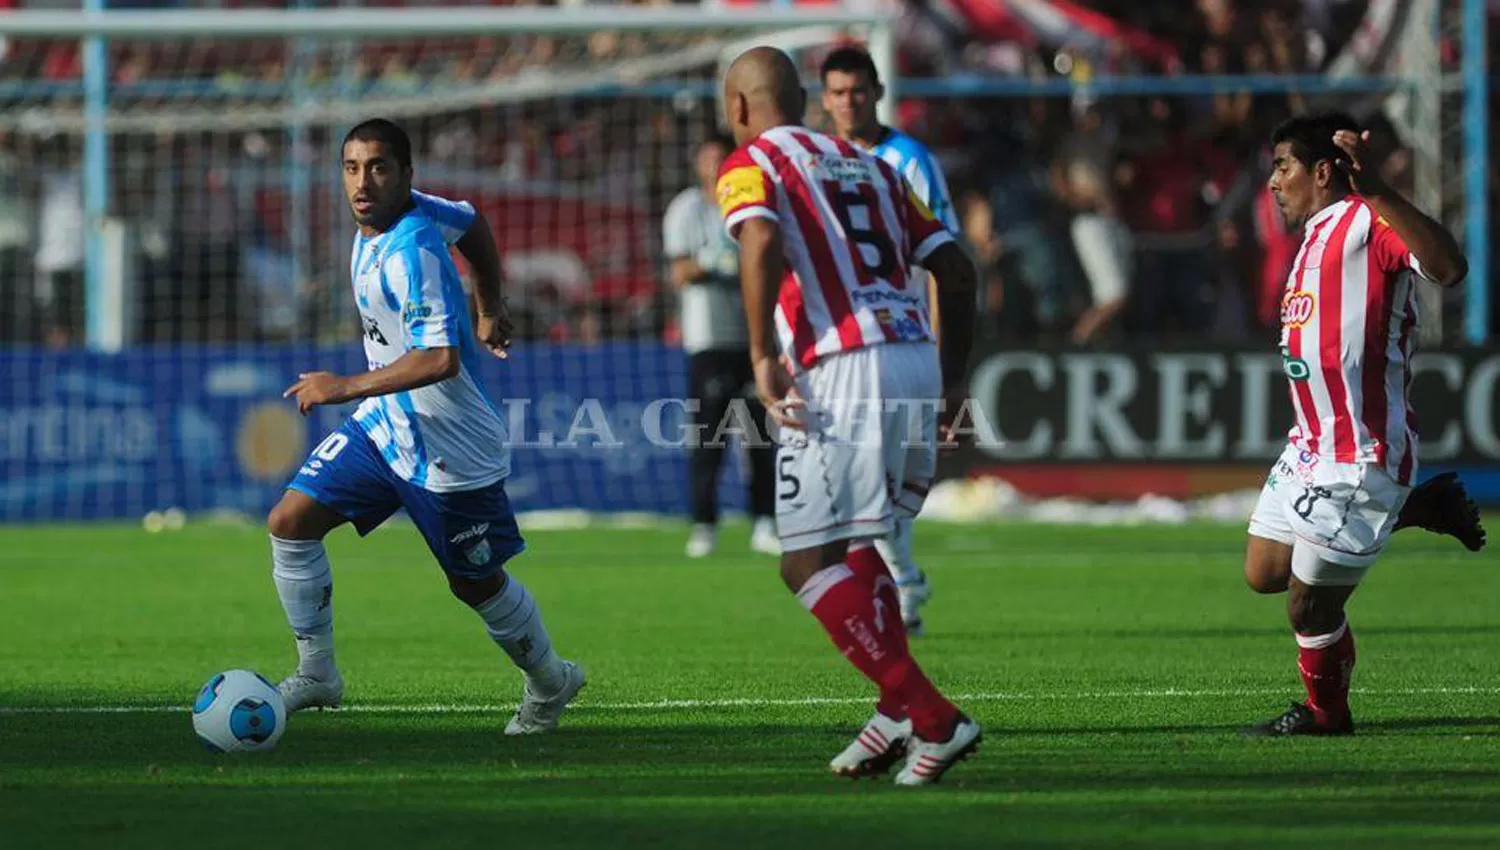 EN EL RECUERDO. Atlético y San Martín se enfrentaron por Copa Argentina en marzo de 2013 y el triunfo por para el Decano, 3 a 1. (ARCHIVO LA GACETA)